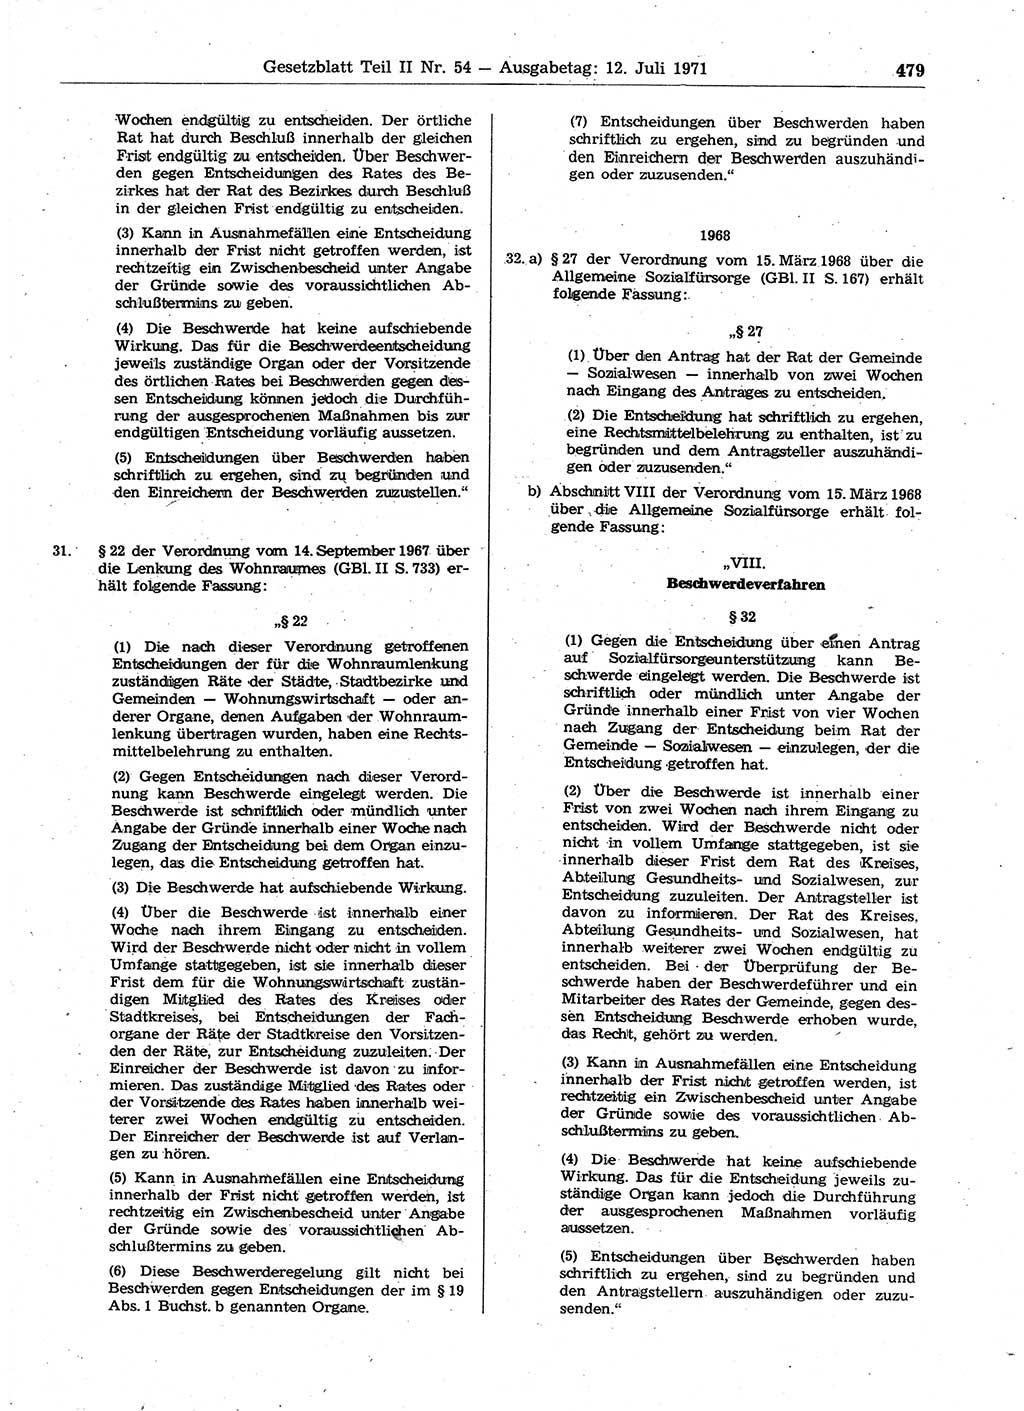 Gesetzblatt (GBl.) der Deutschen Demokratischen Republik (DDR) Teil ⅠⅠ 1971, Seite 479 (GBl. DDR ⅠⅠ 1971, S. 479)